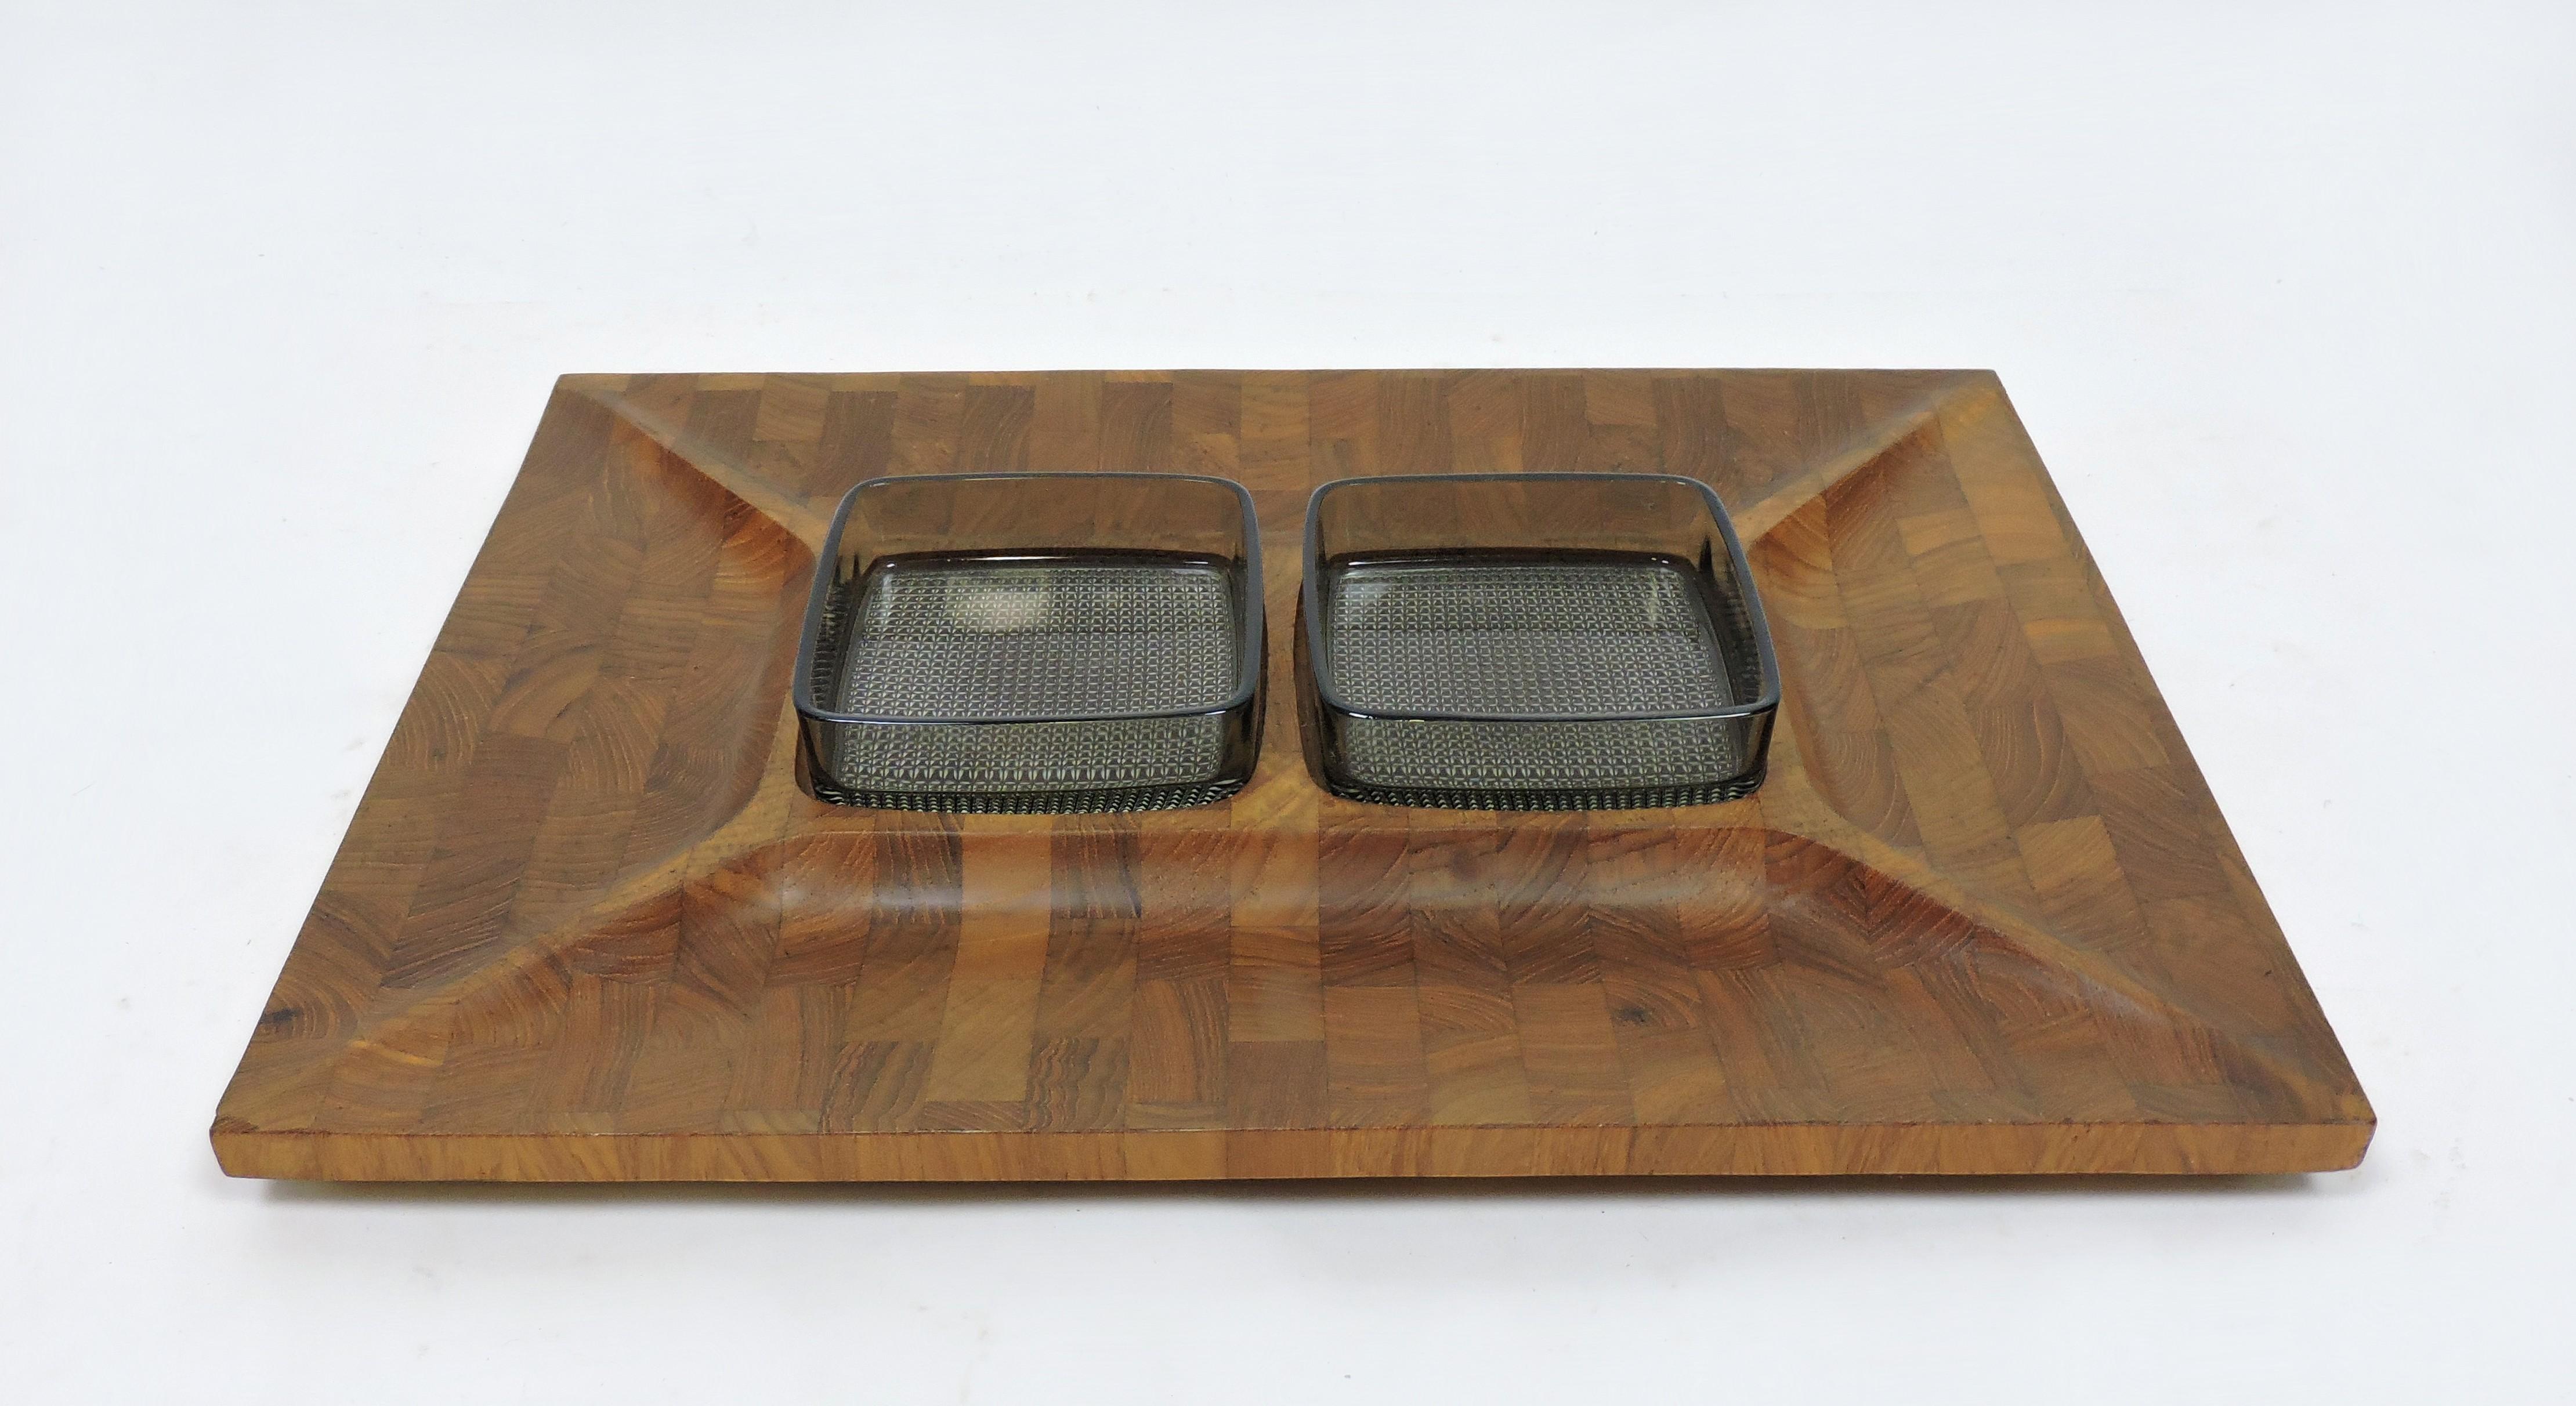 Schönes Tablett aus massivem Teakholz mit zwei Glaseinsätzen, hergestellt in Dänemark von Digsmed. Dieses Tablett ist aus gestocktem Hirnholz gefertigt und hat vier Unterteilungen. Die Glaseinsätze sind eine hellgraue Farbe und sind 4,25 Zoll im